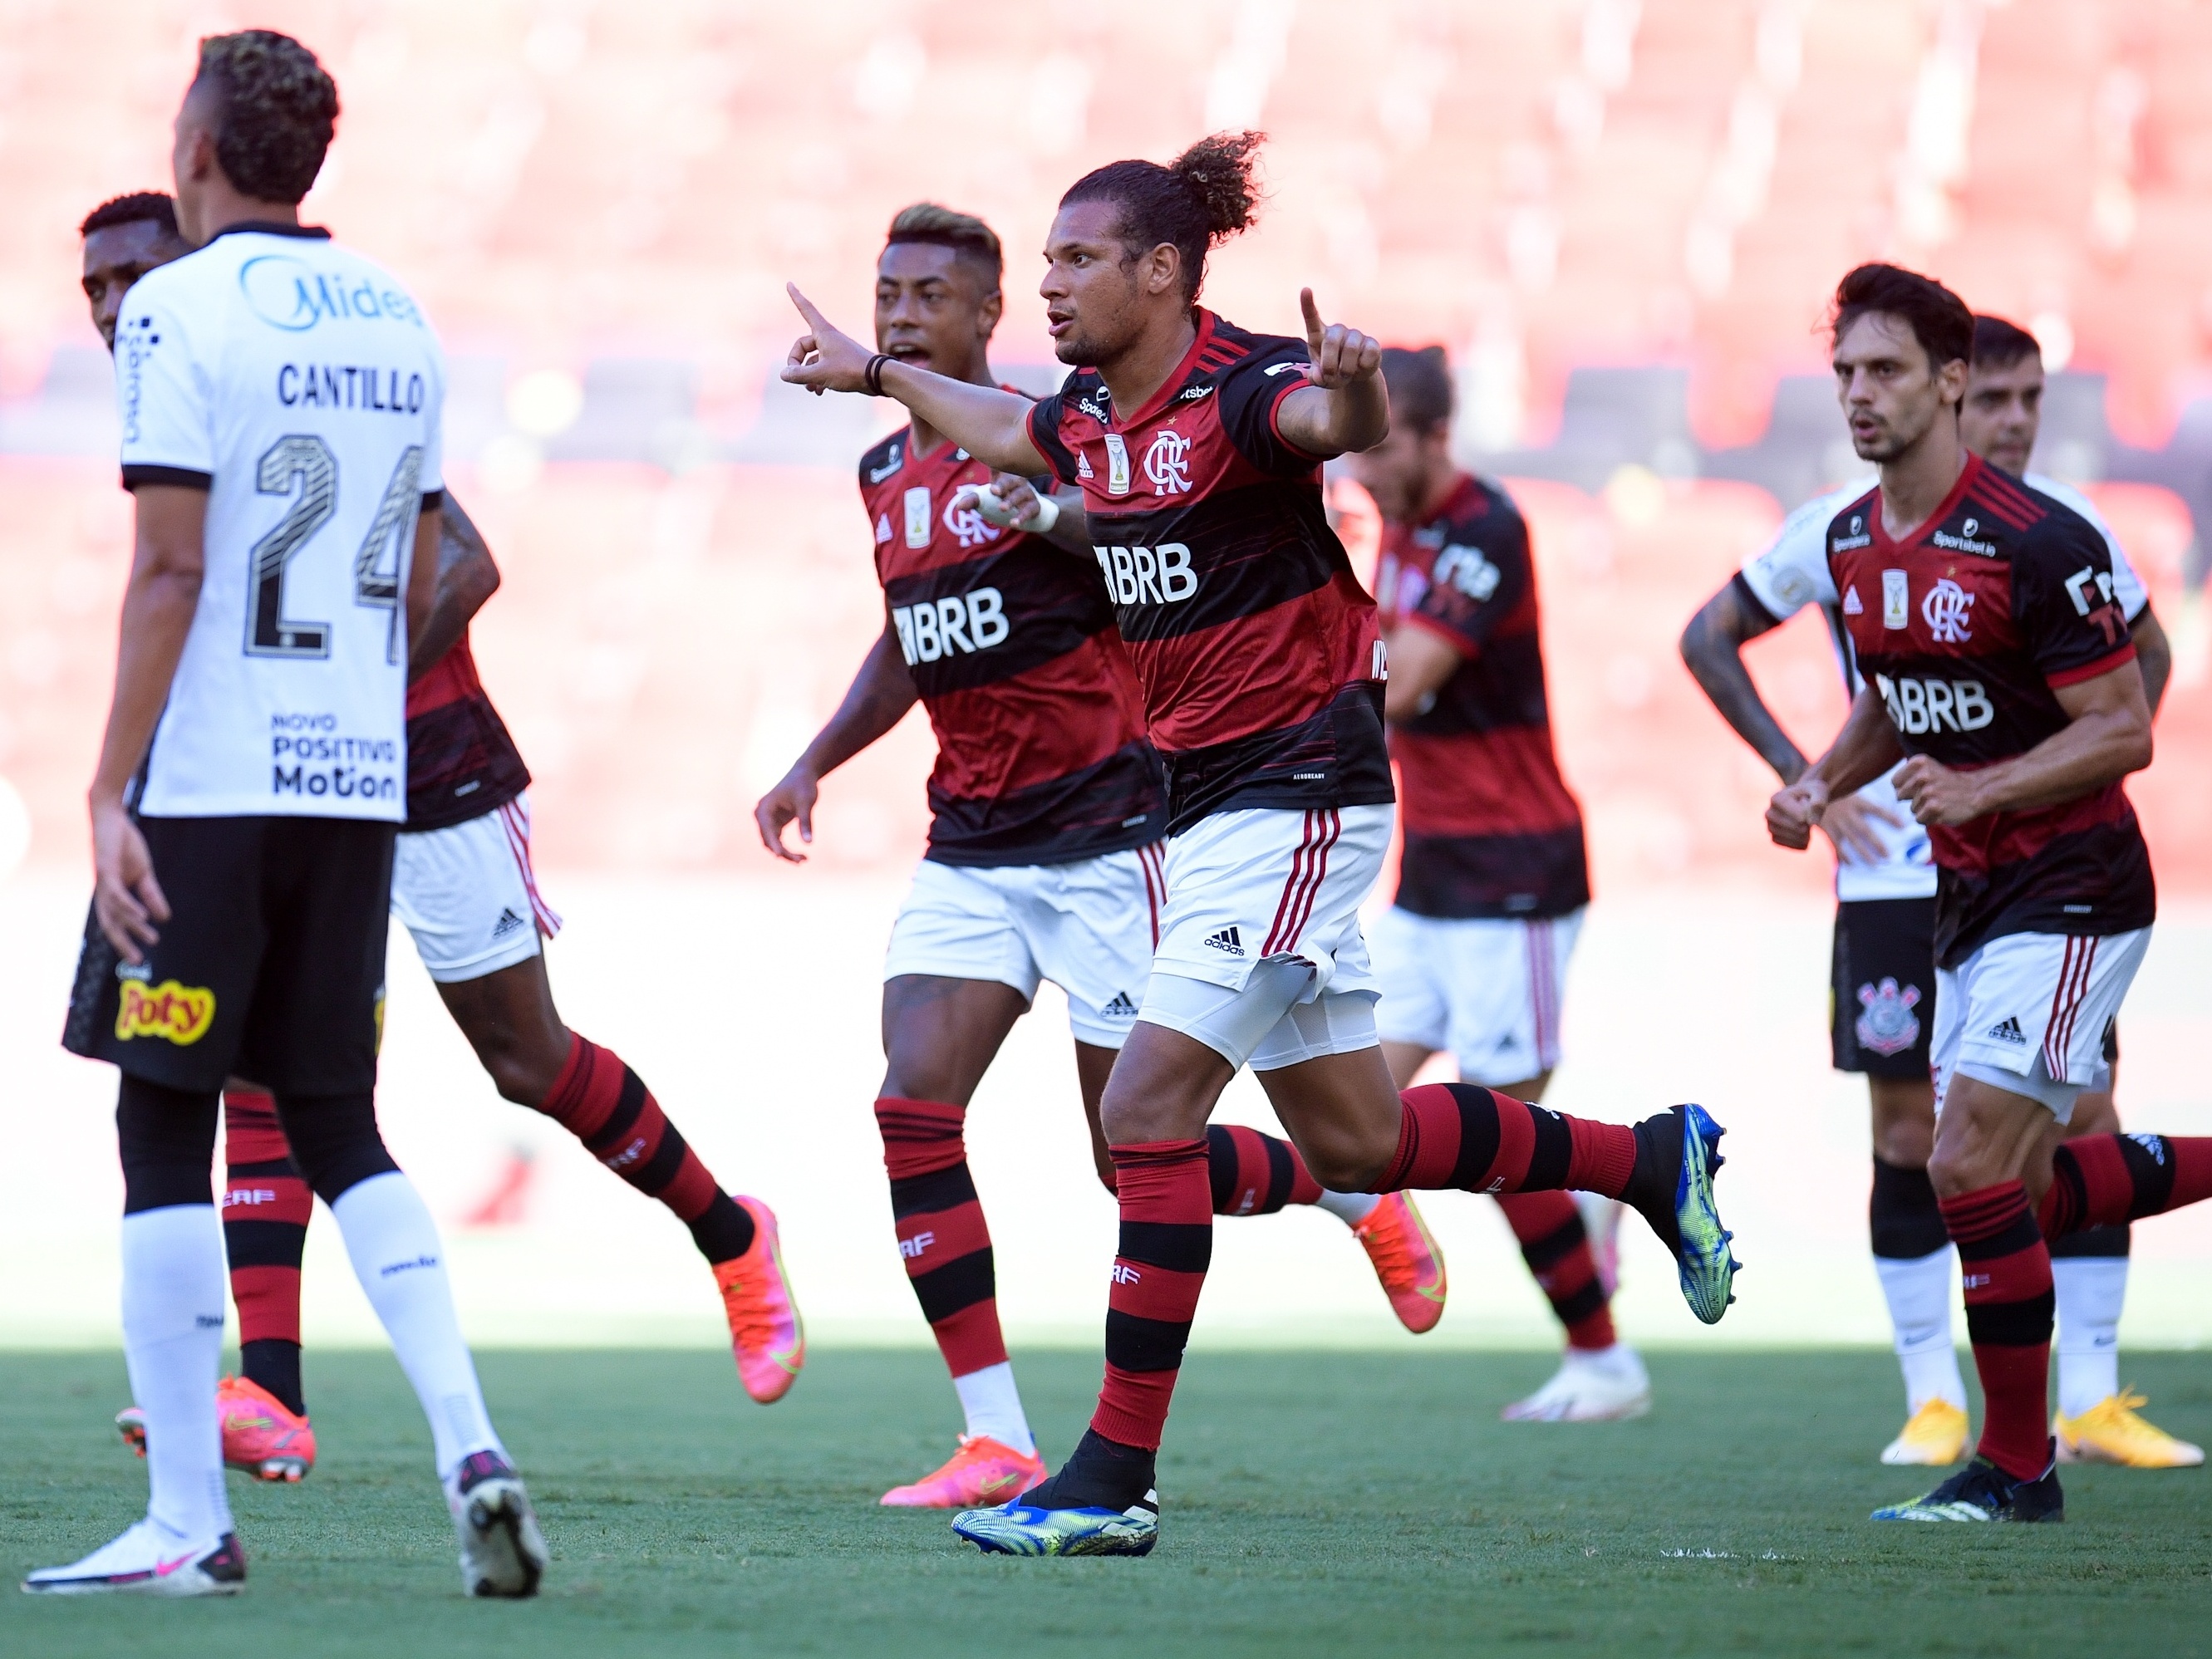 Isla admite erros defensivos, mas exalta título pelo Flamengo